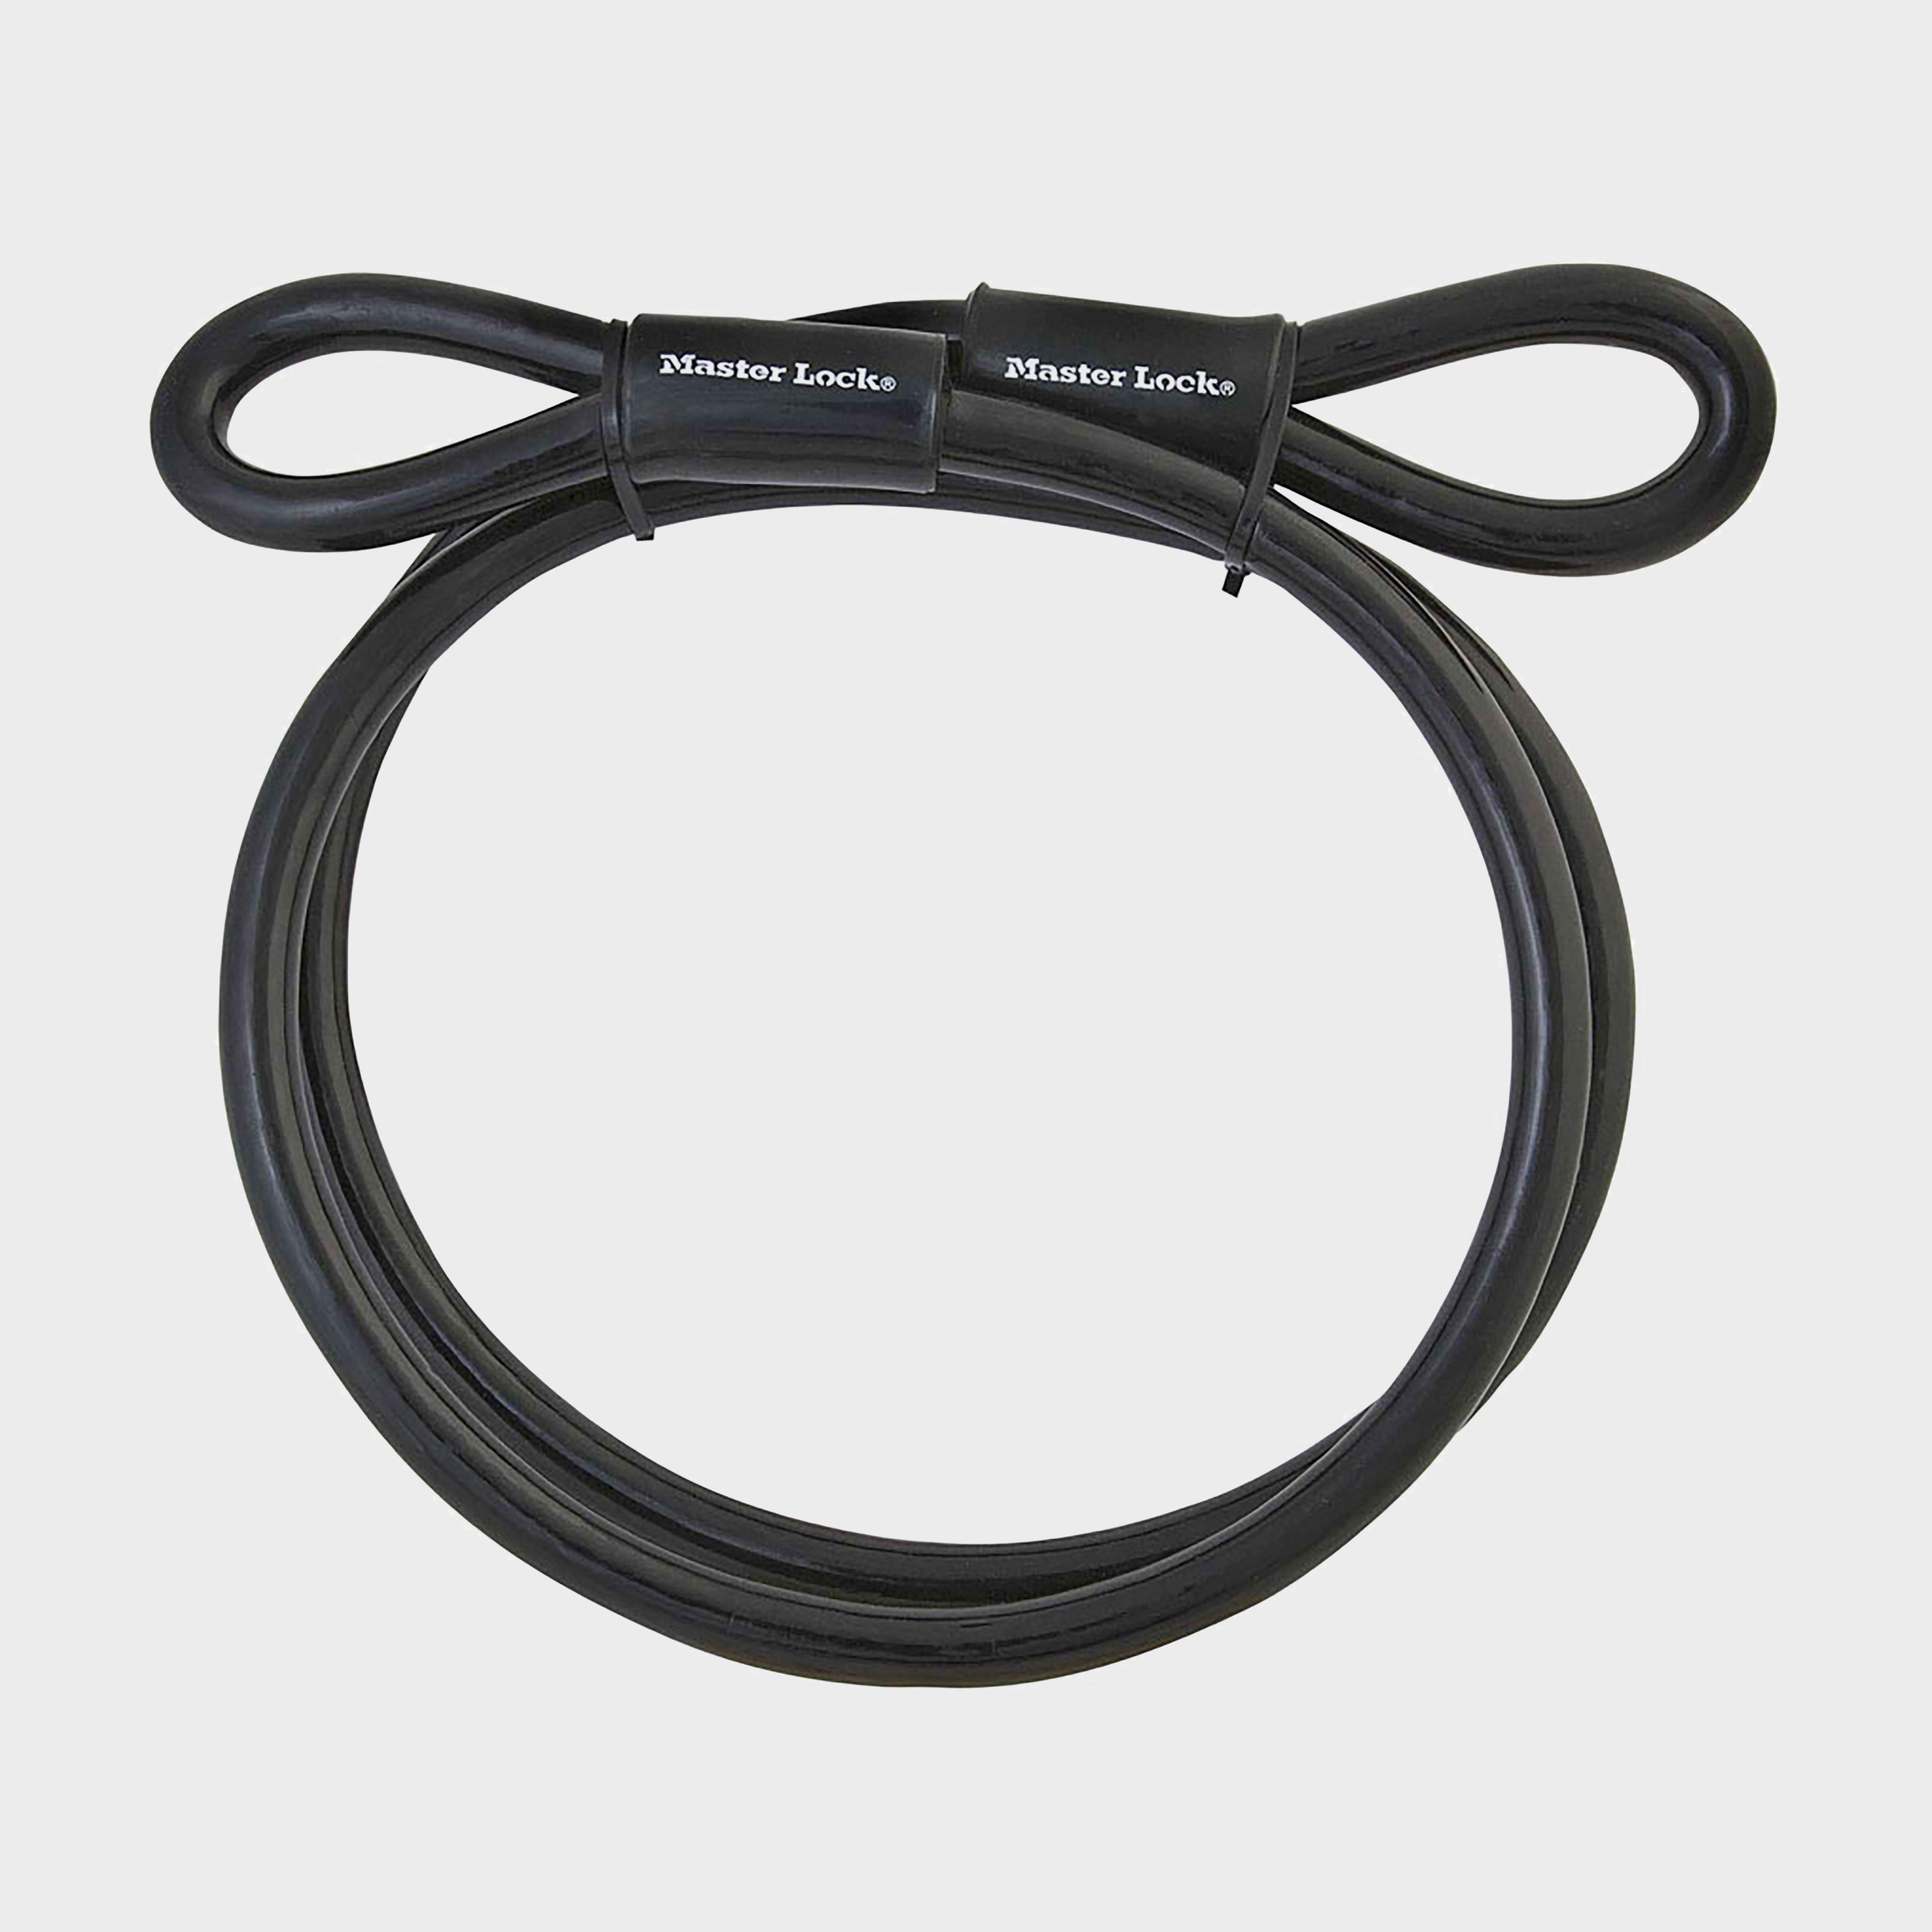 Masterlock 49eurd Looped End Cable Lock - Black/3mx10mm  Black/3mx10mm